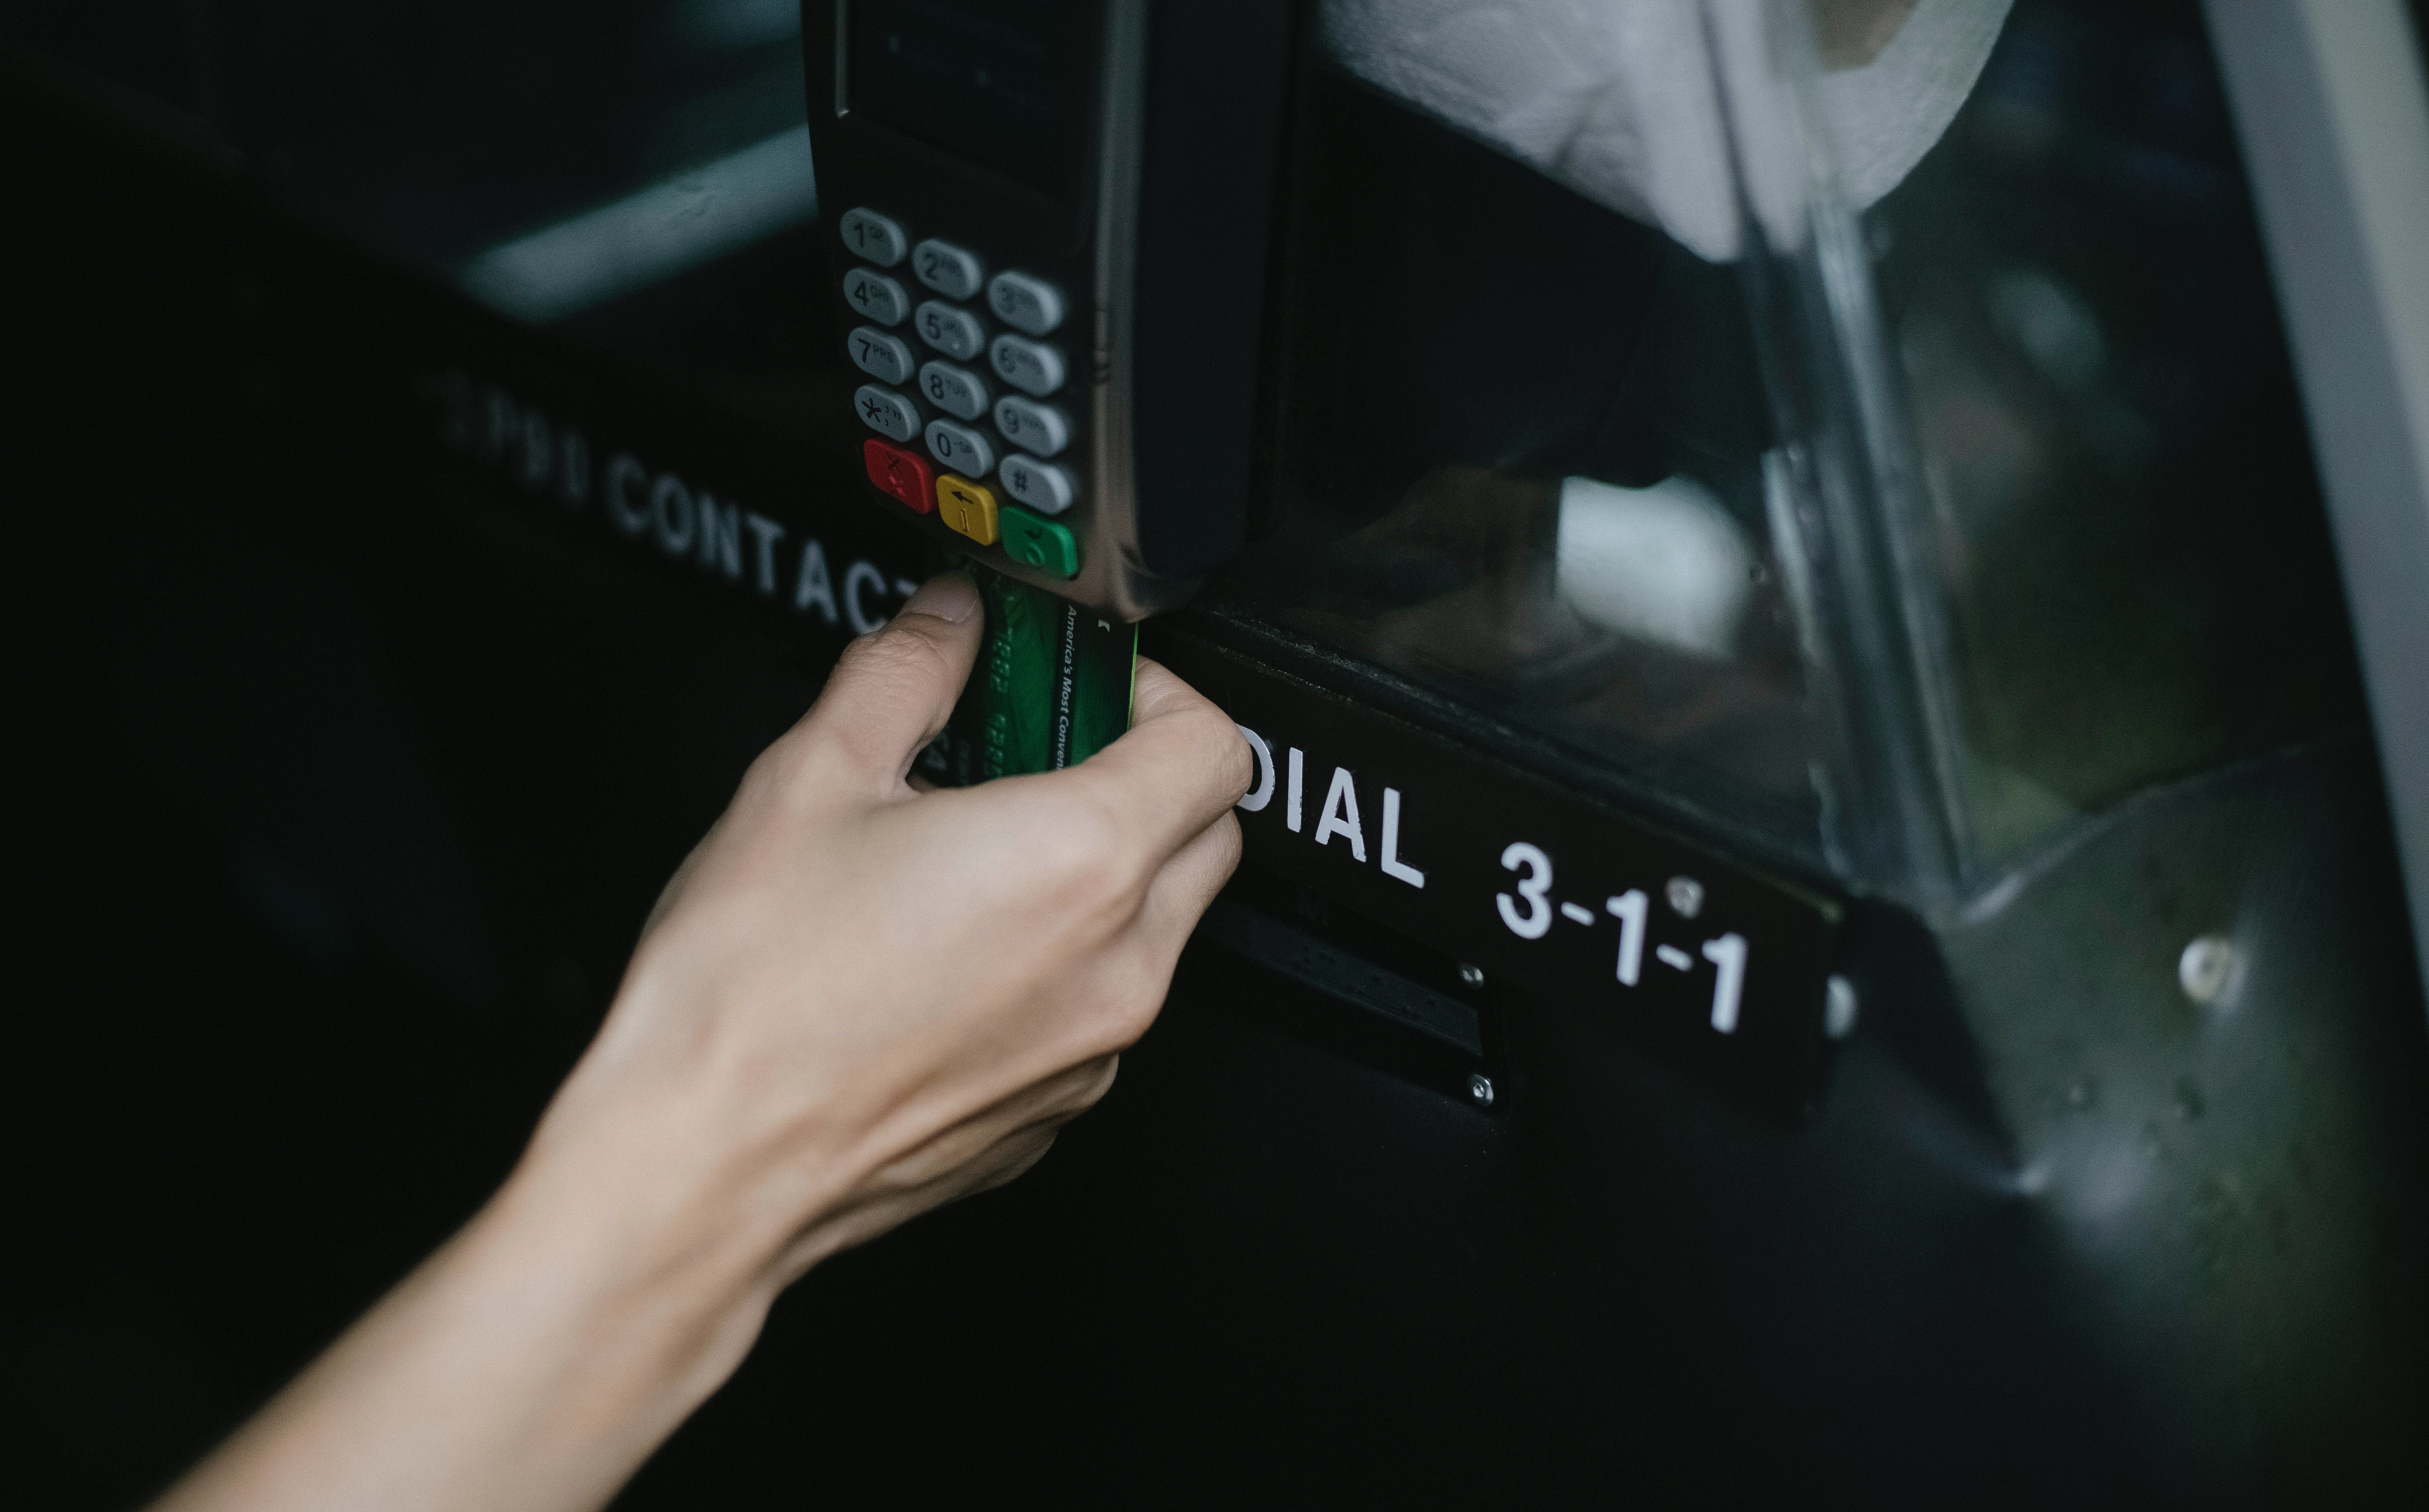 Ein Fahrgast benutzt einen Kartenautomaten. | Quelle: Pexels